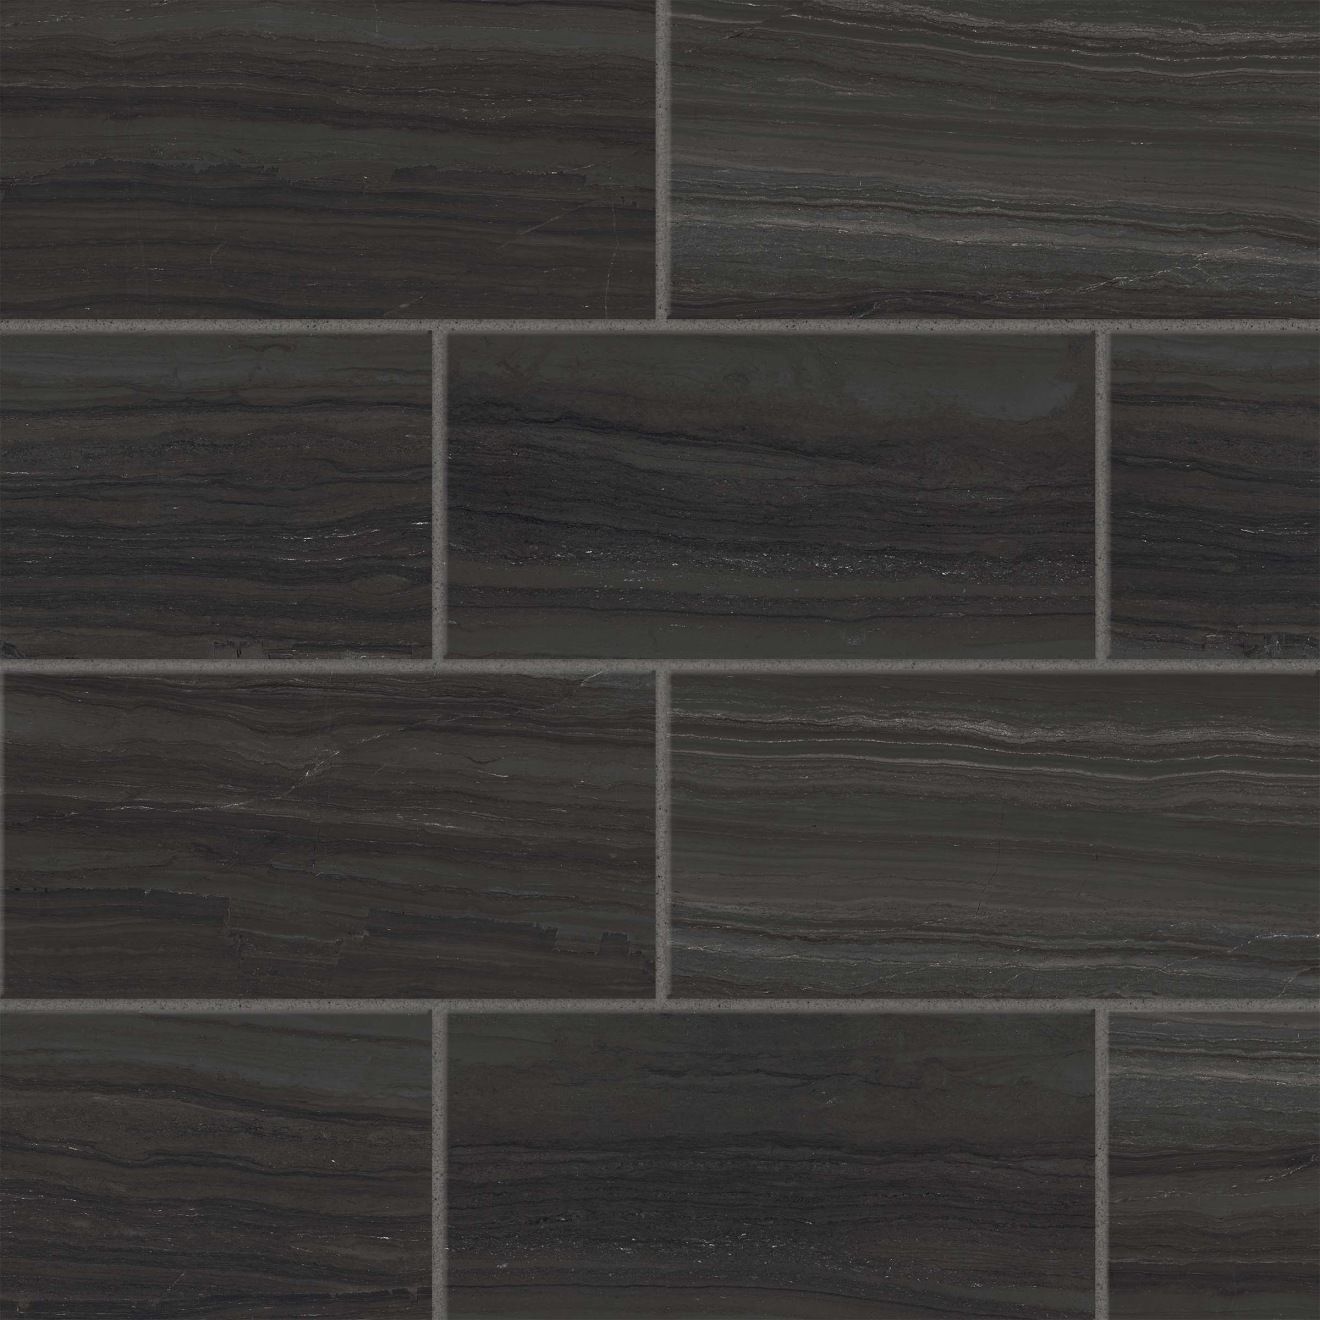 Highland 12" x 24" Floor & Wall Tile in Black | Bedrosians Tile & Stone